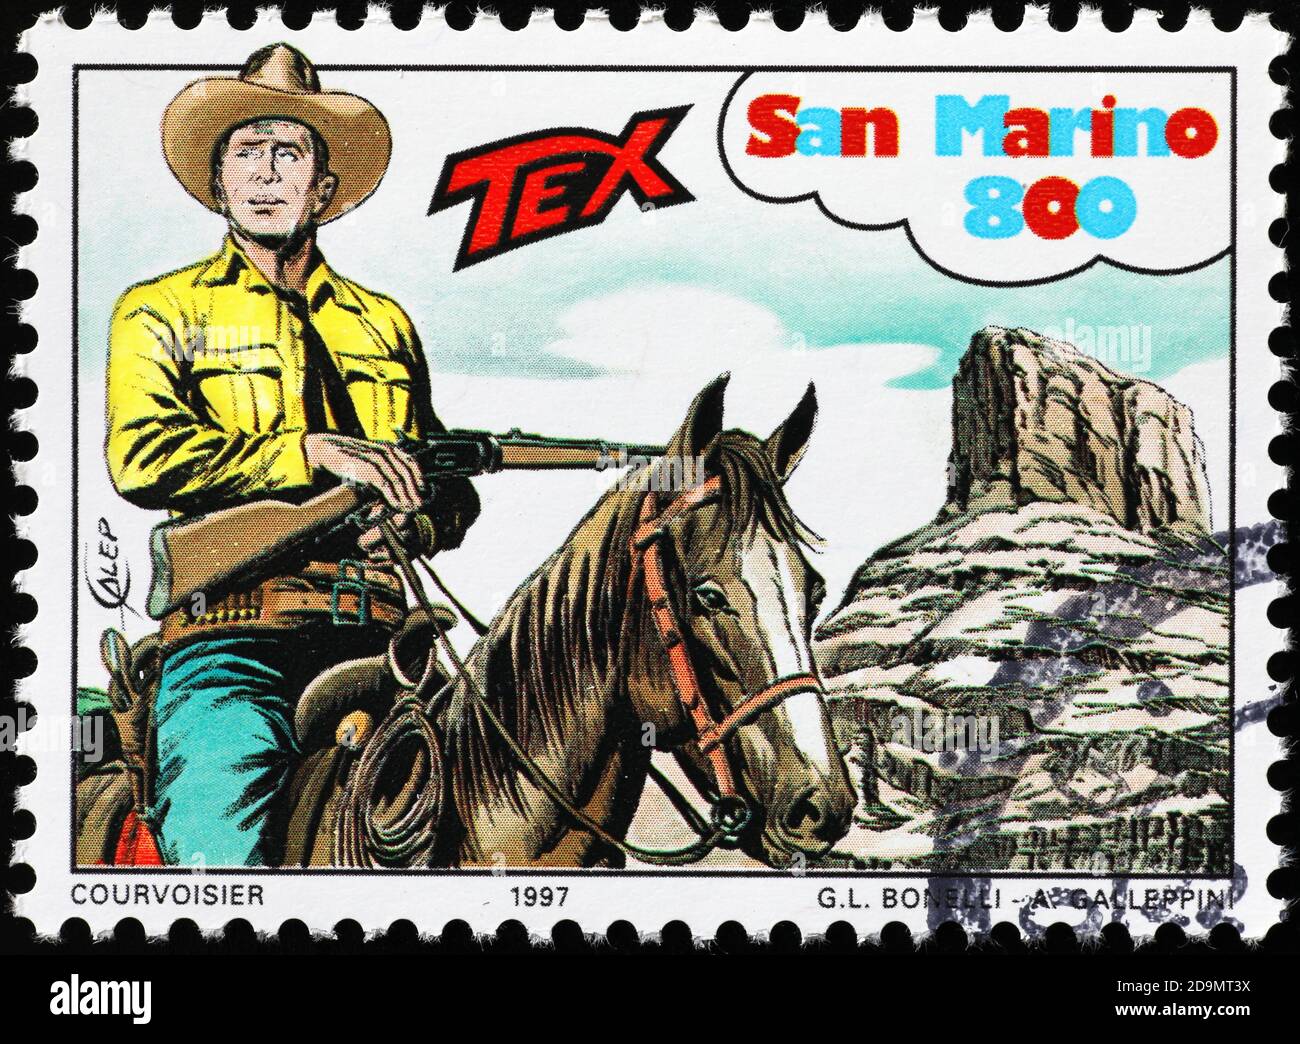 Italienische Cartoon Tex Willer Briefmarke Stockfoto